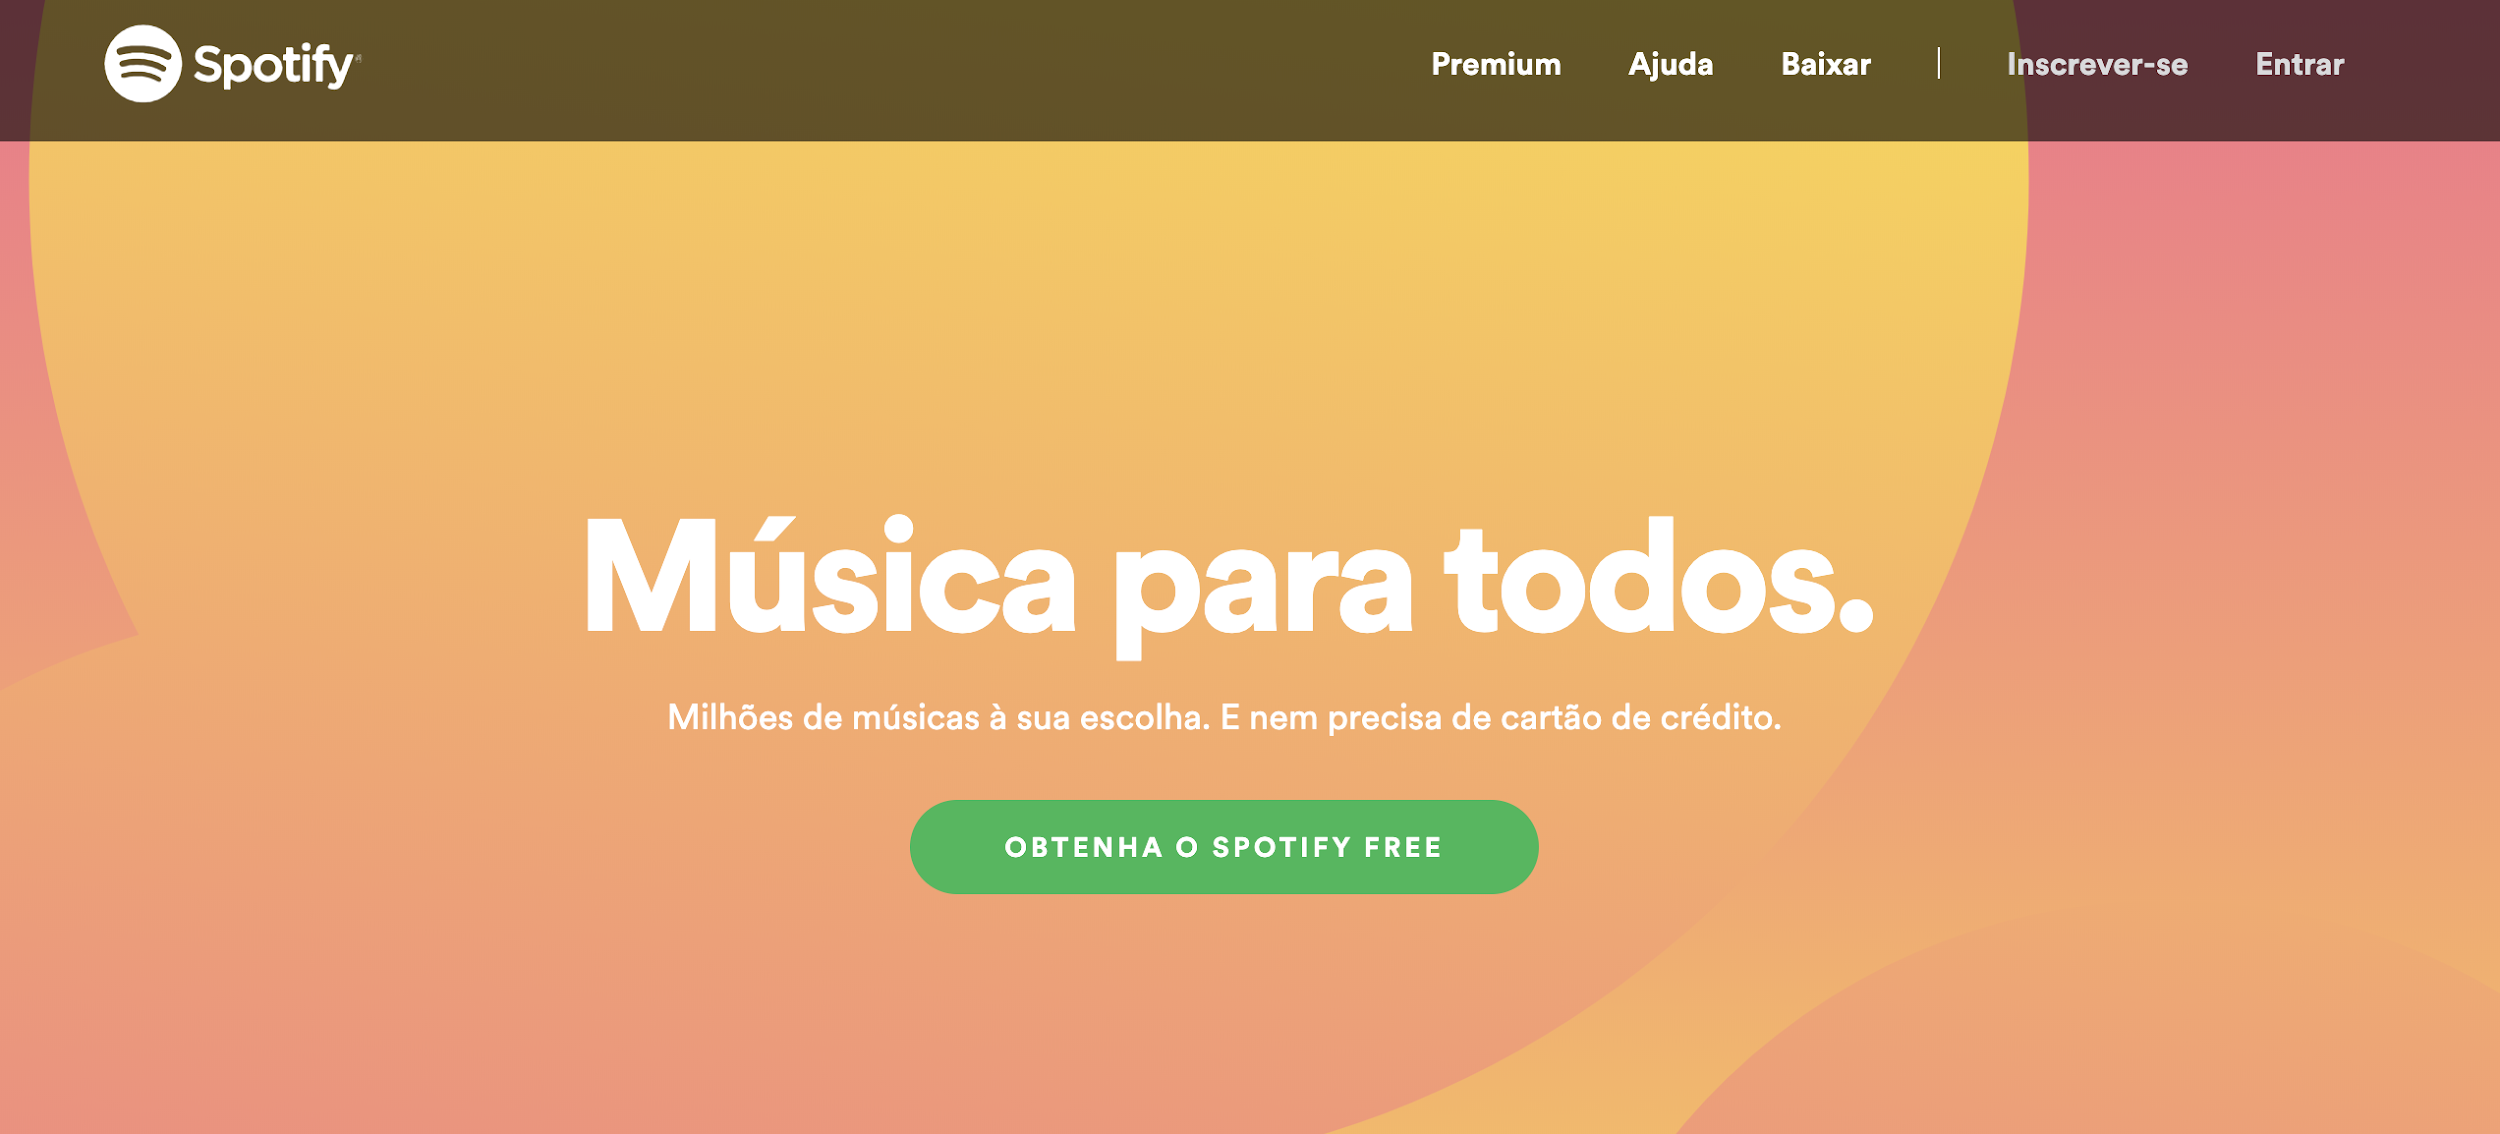 Spotify como exemplo de plataforma digitais para música